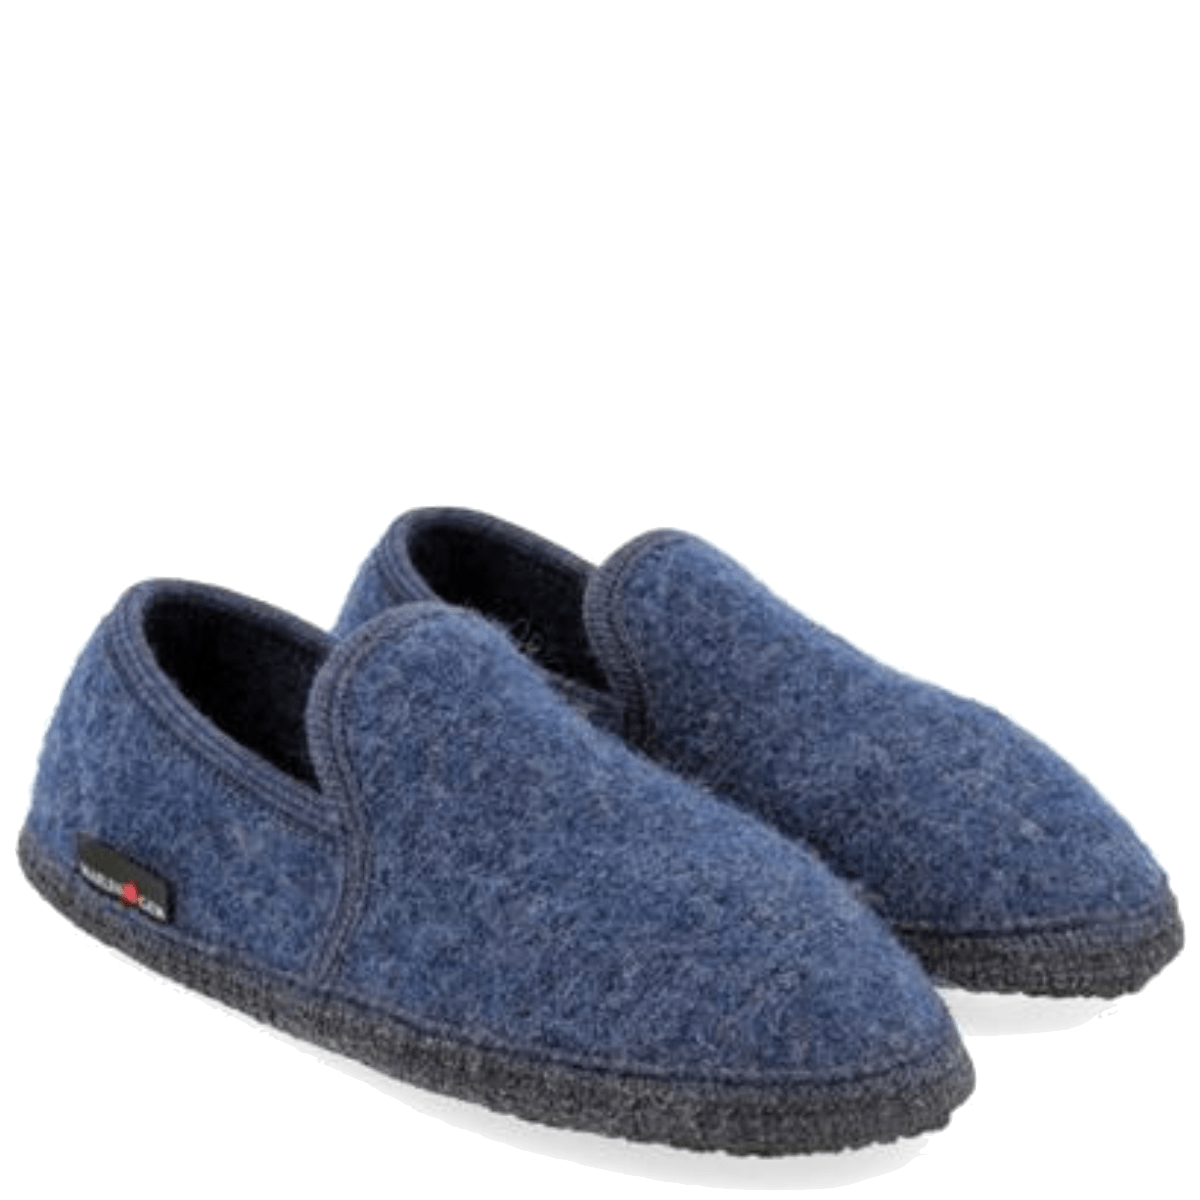 Pantofola Haflinger Loafer Lana Jeans - Haflinger - Calzature Savorè